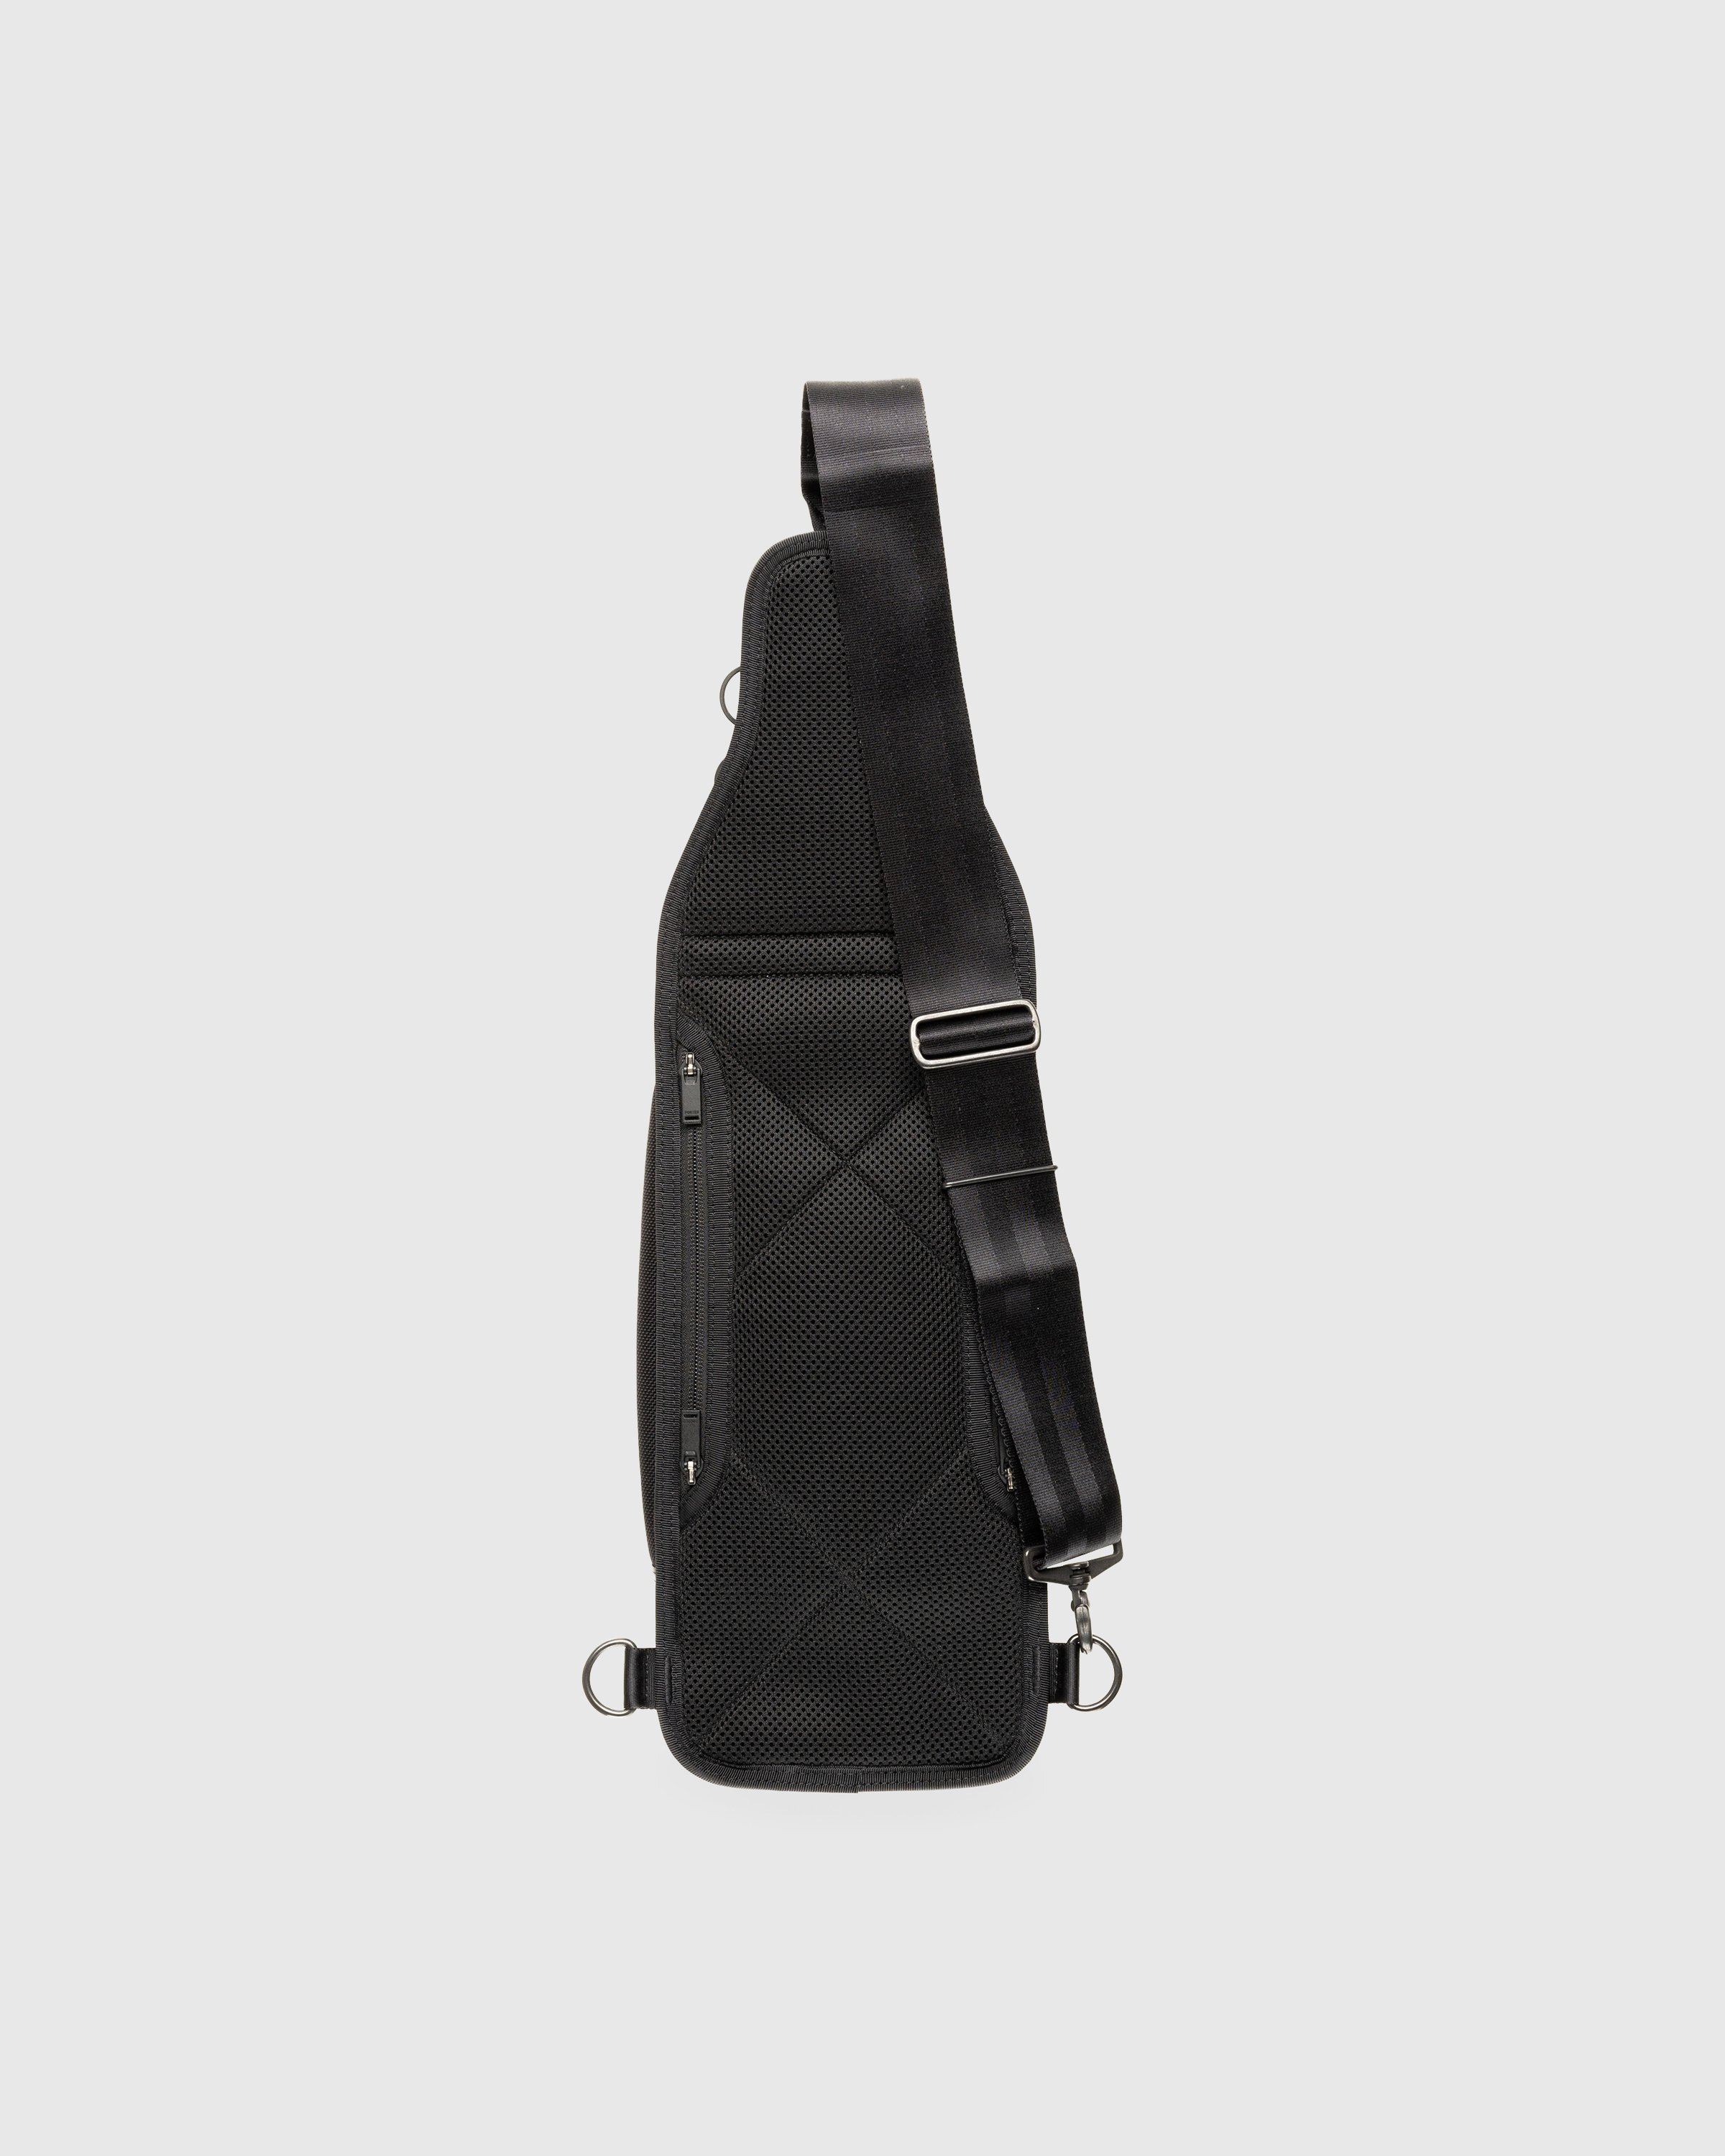 Porter-Yoshida & Co. - Heat Sling Shoulder Bag Black - Accessories - Black - Image 2